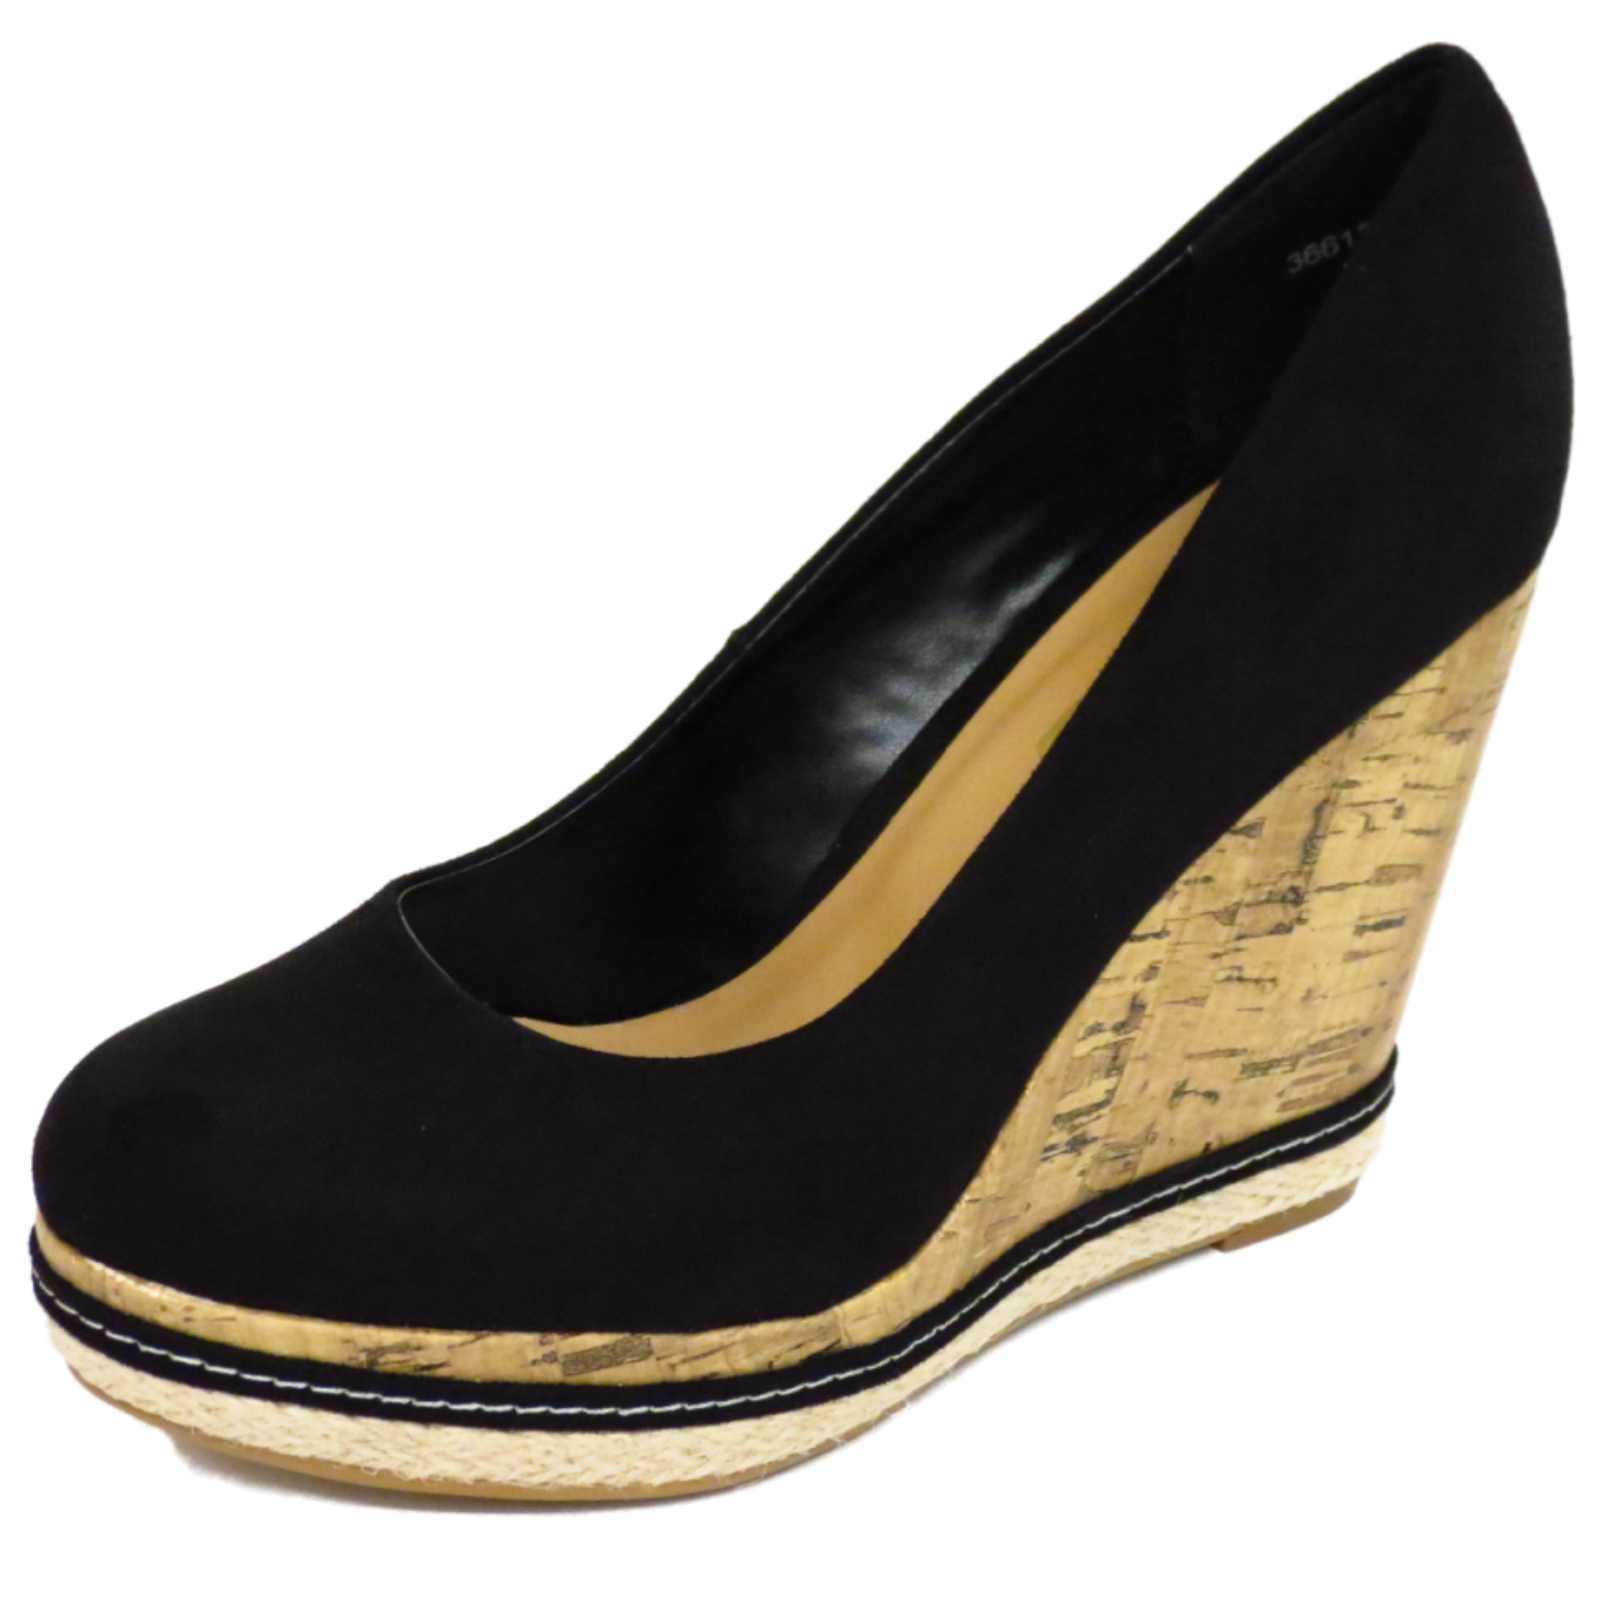 black wedge heel court shoes